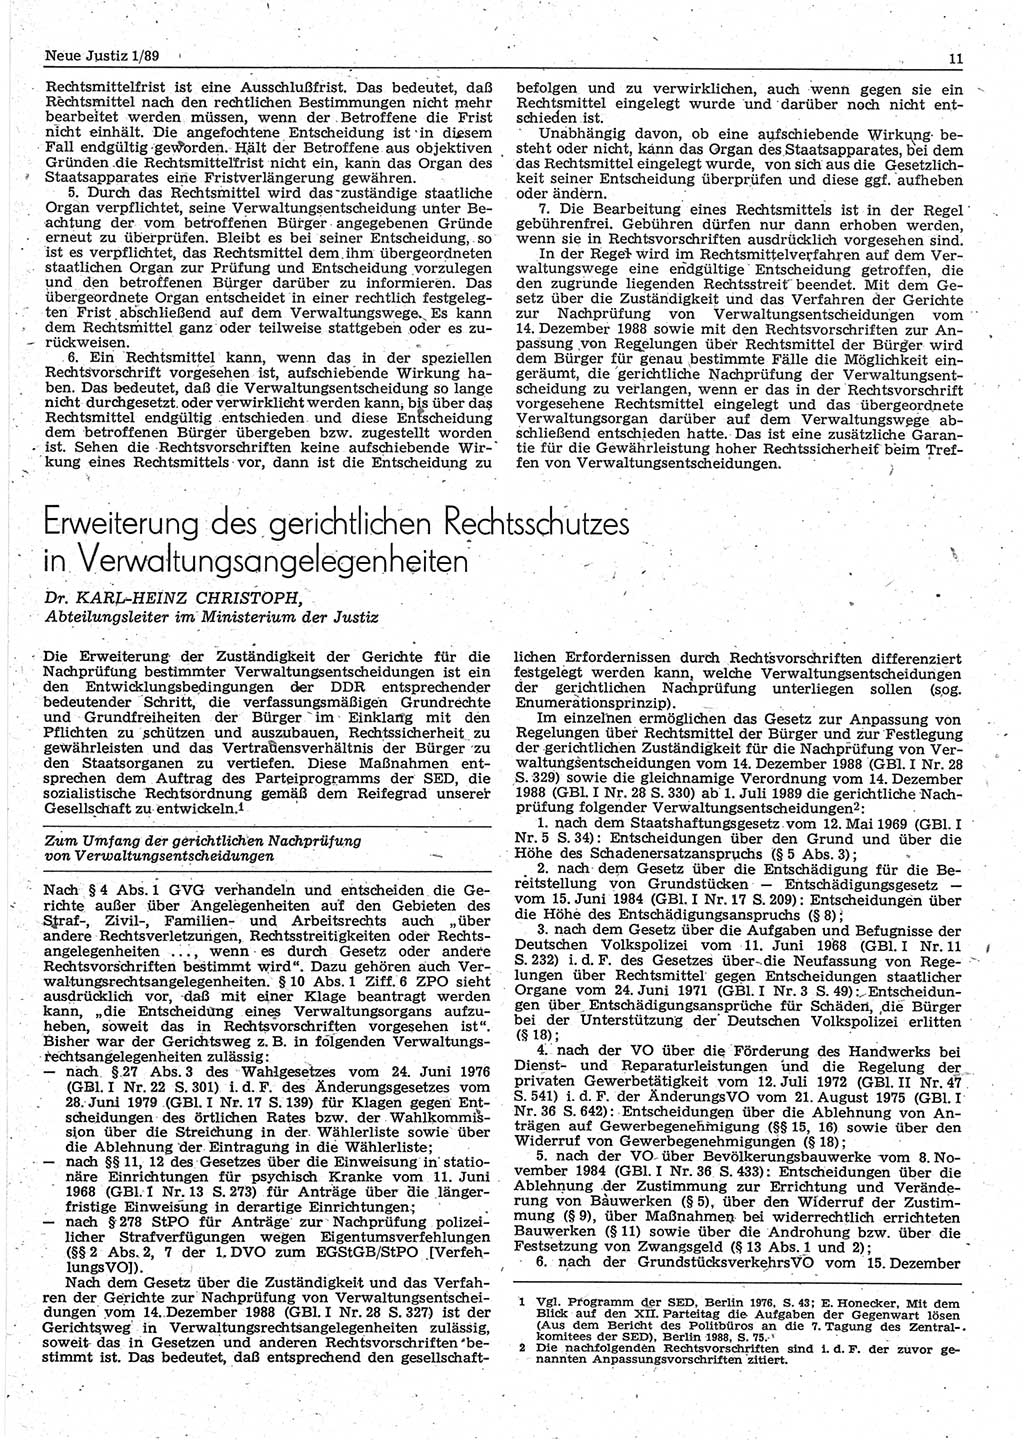 Neue Justiz (NJ), Zeitschrift für sozialistisches Recht und Gesetzlichkeit [Deutsche Demokratische Republik (DDR)], 43. Jahrgang 1989, Seite 11 (NJ DDR 1989, S. 11)